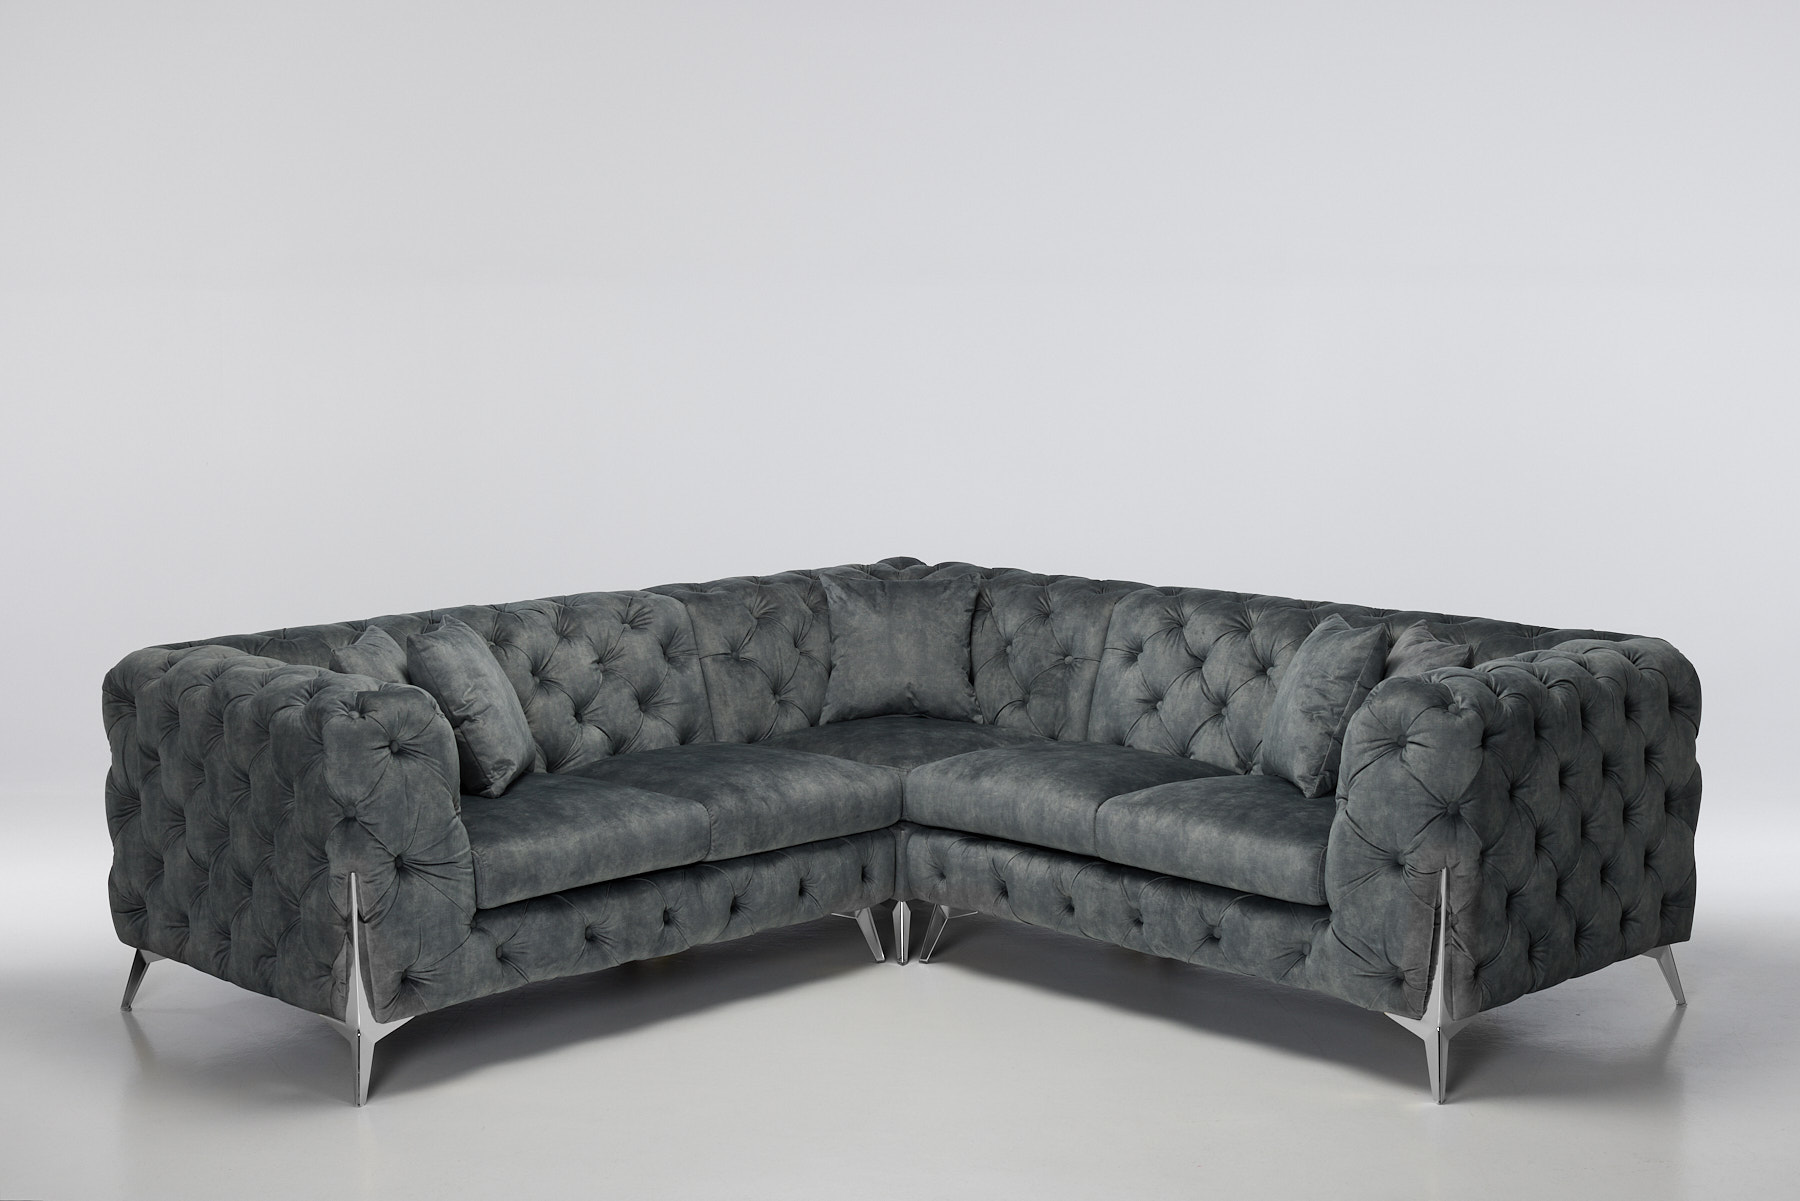 Annabelle - Luxury Chesterfield Corner Sofa, Grey Mottled Velvet with Silver Legs